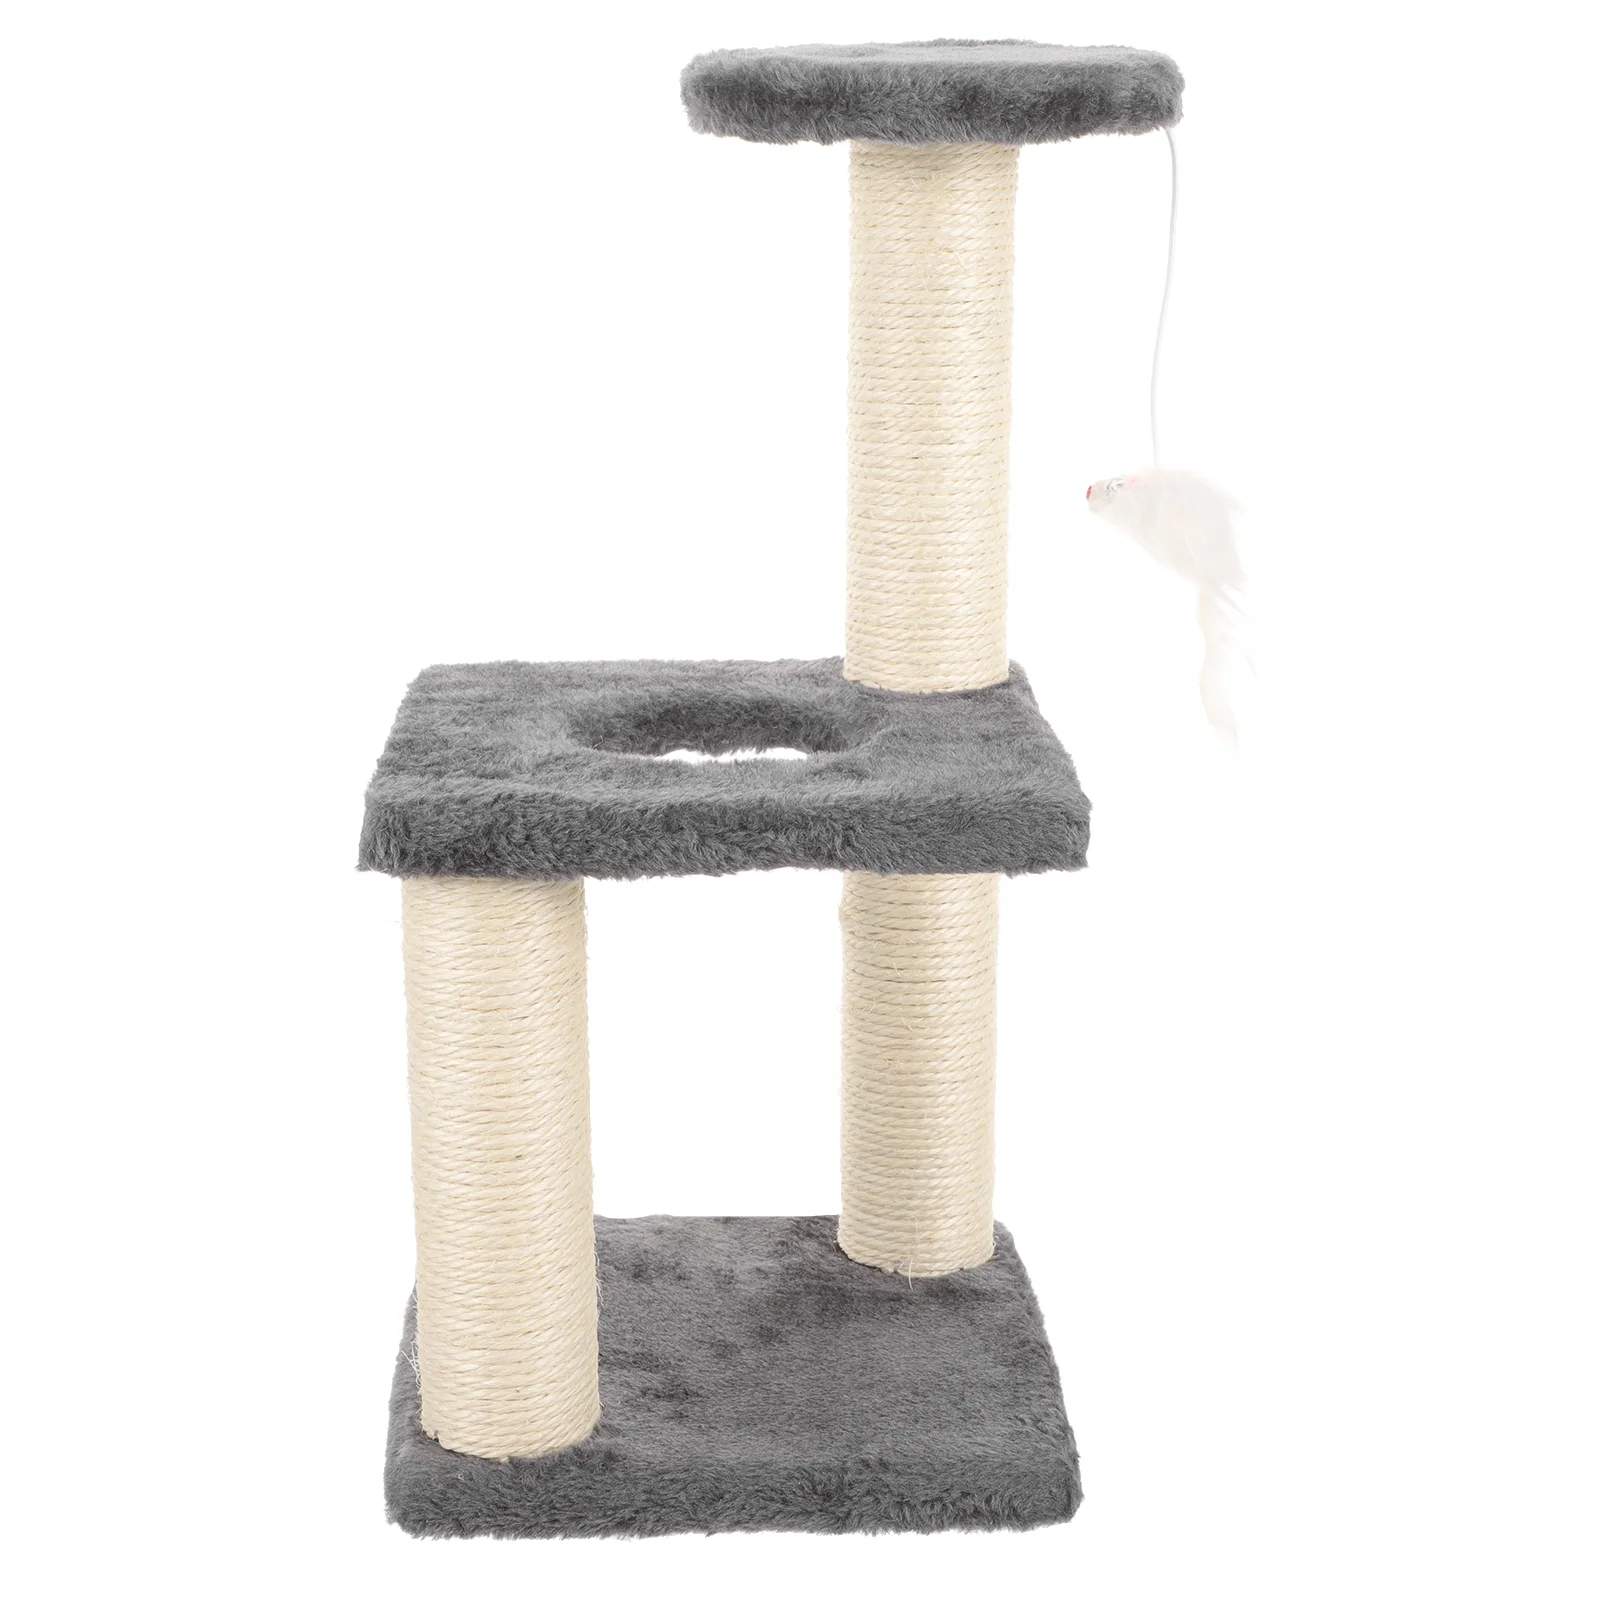 

Кошачья Когтеточка, удобная рама для лазания, пола, Когтеточка, интегрированная Вертикальная игрушка для котят